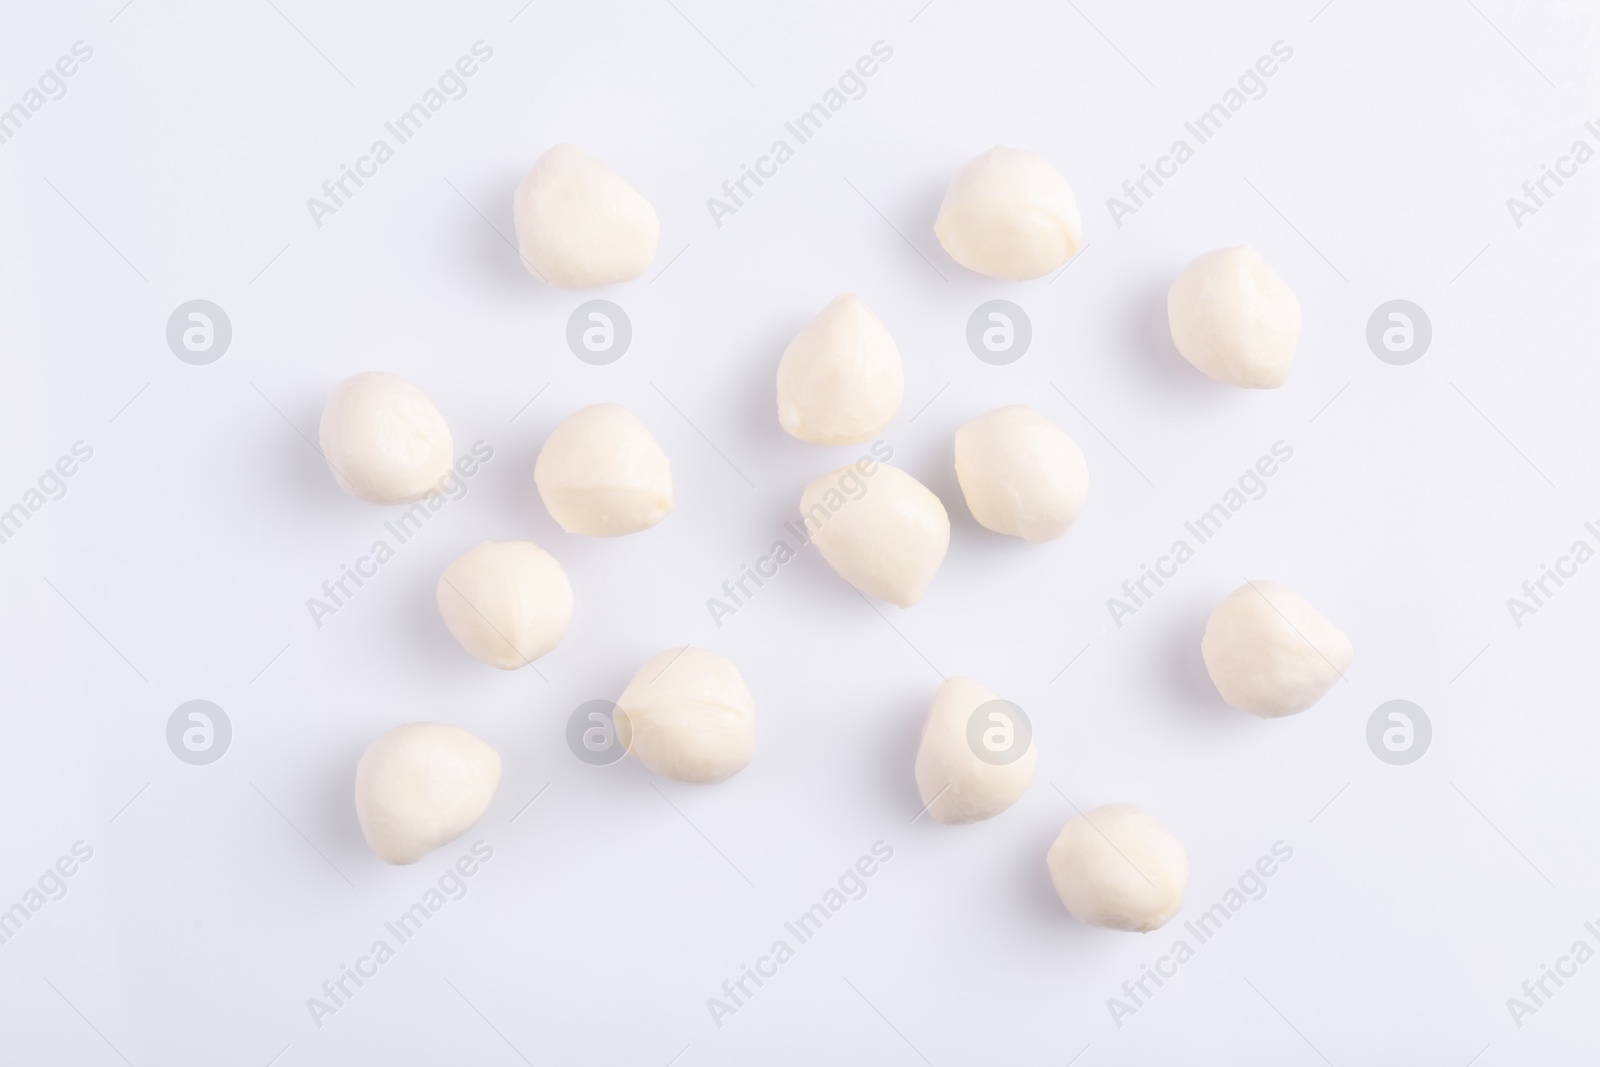 Photo of Tasty mozzarella balls on white background, flat lay